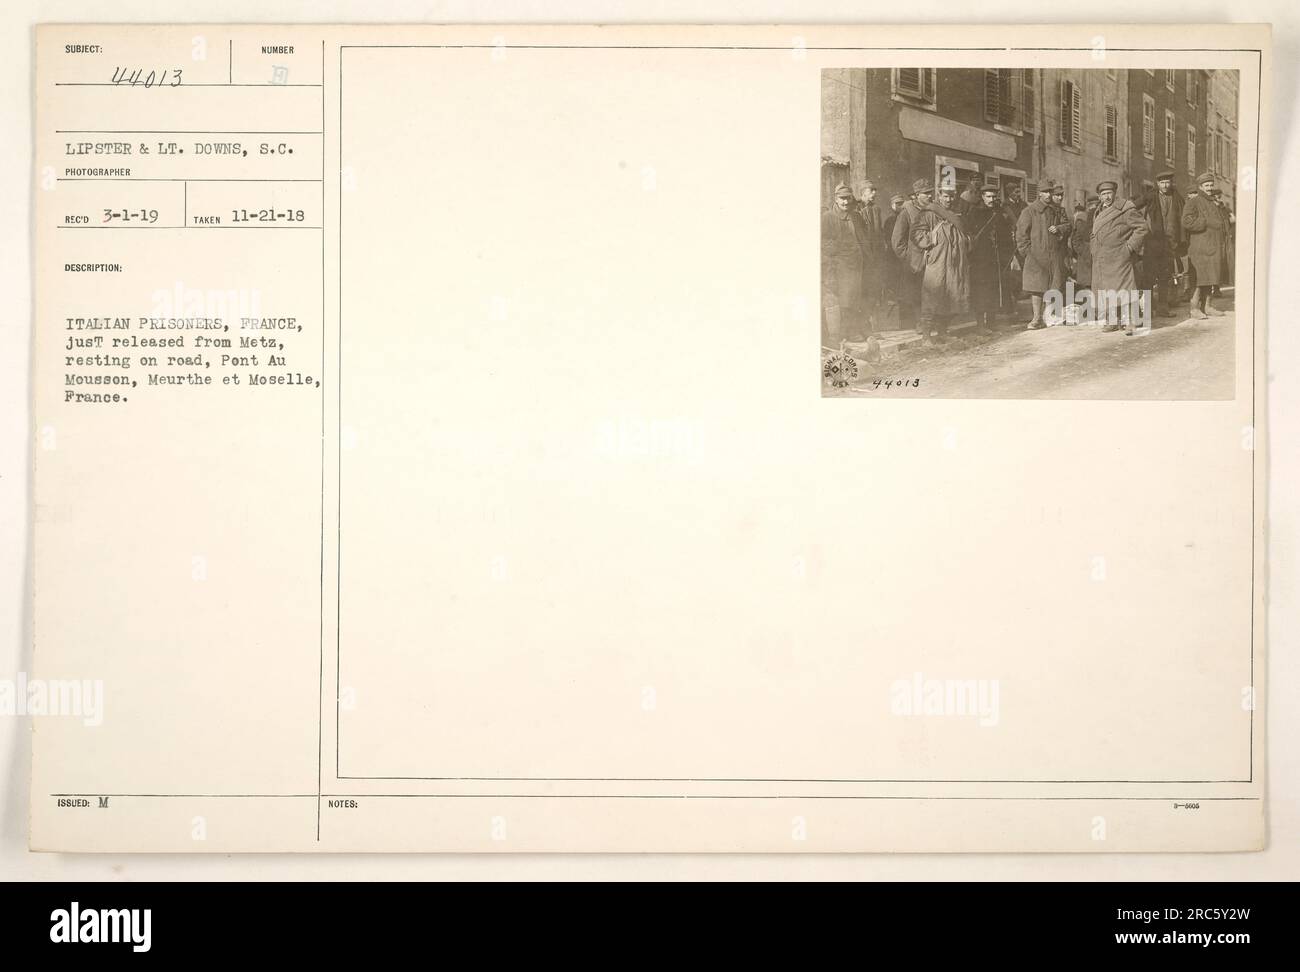 Italienische Kriegsgefangene, die vor kurzem aus der Gefangenschaft in Mets entlassen wurden, machen eine Pause und ruhen sich auf der Straße in Pont AUT Mousson, Meurthe et Moselle, Frankreich. Das Foto wurde am 21. November 1918 aufgenommen. Stockfoto